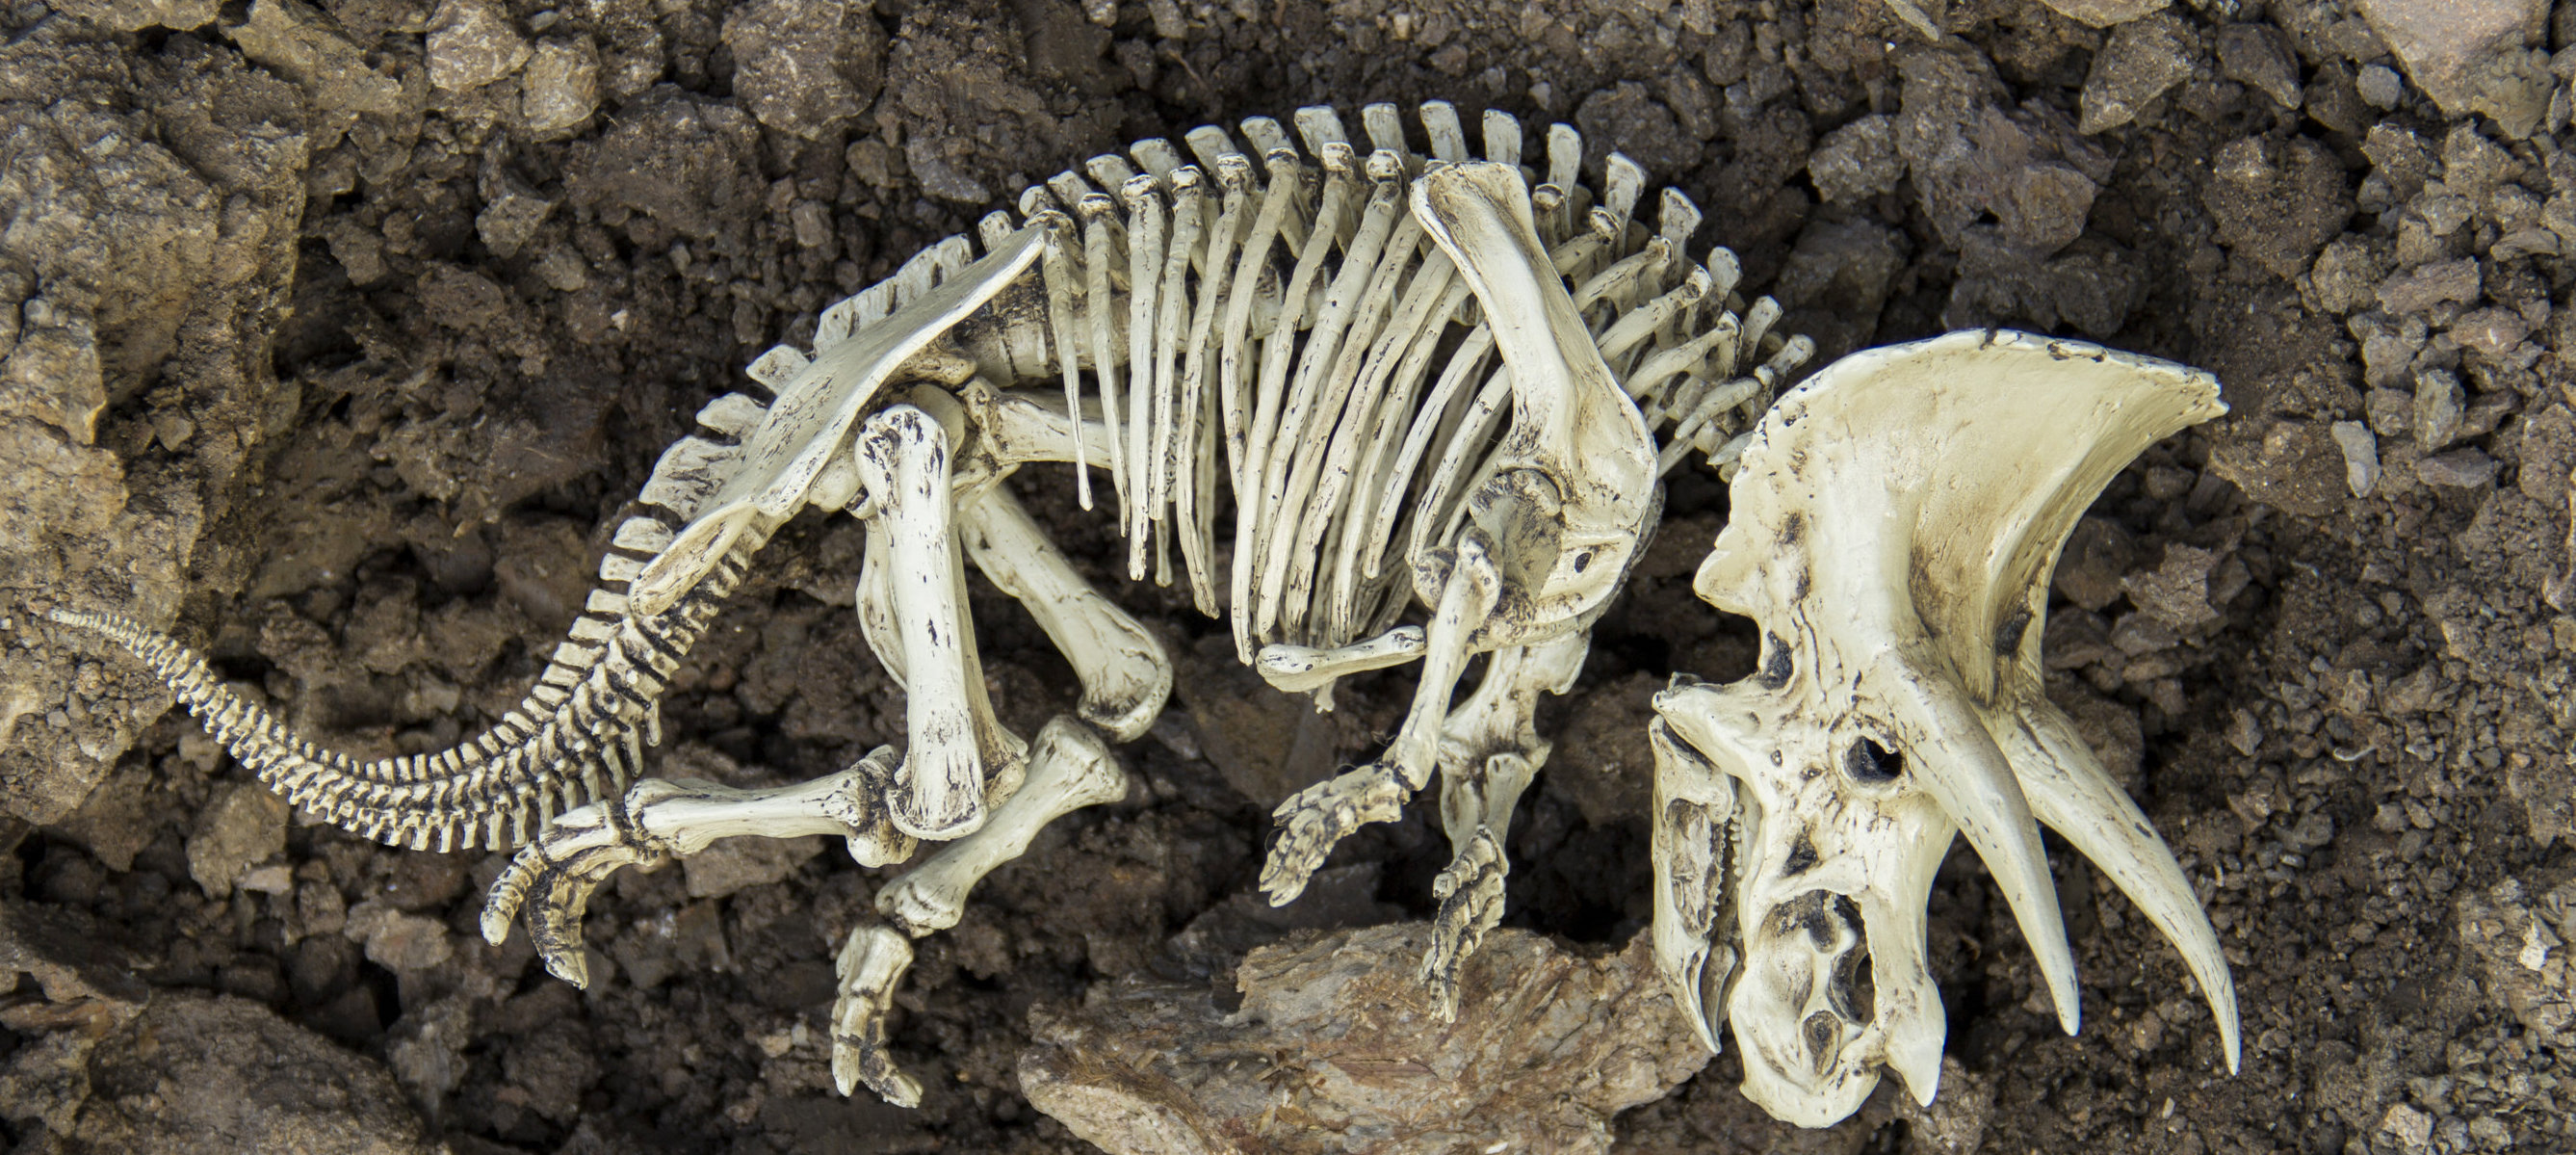 Какие породы образуются из останков живых. Палеонтология динозавры. Кости динозавров. Палеонтология позвоночных. Кости вымерших динозавров.